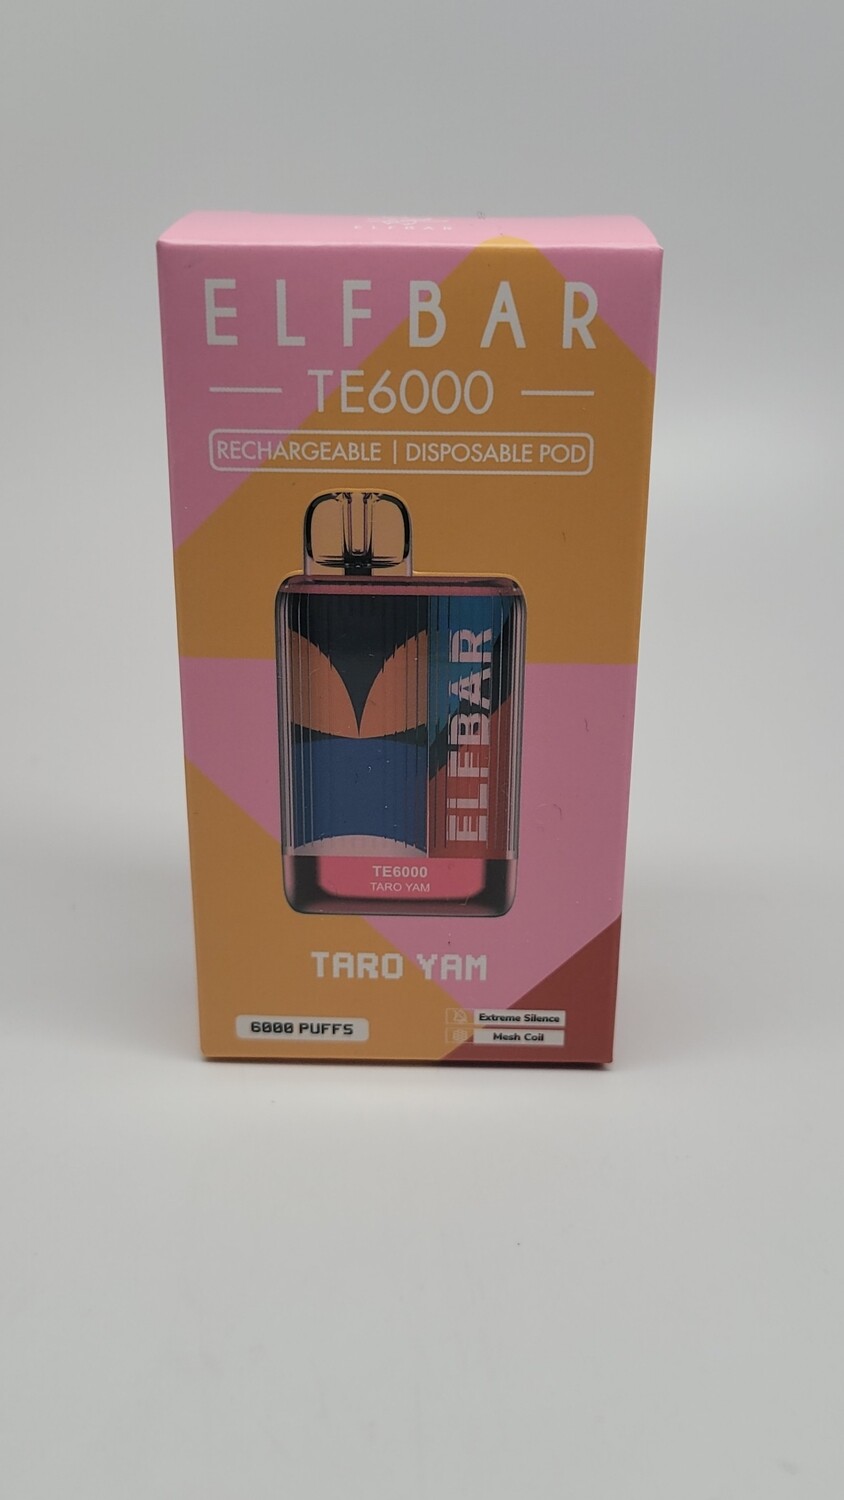 ElfBar TE6000 Disposable Taro Yam